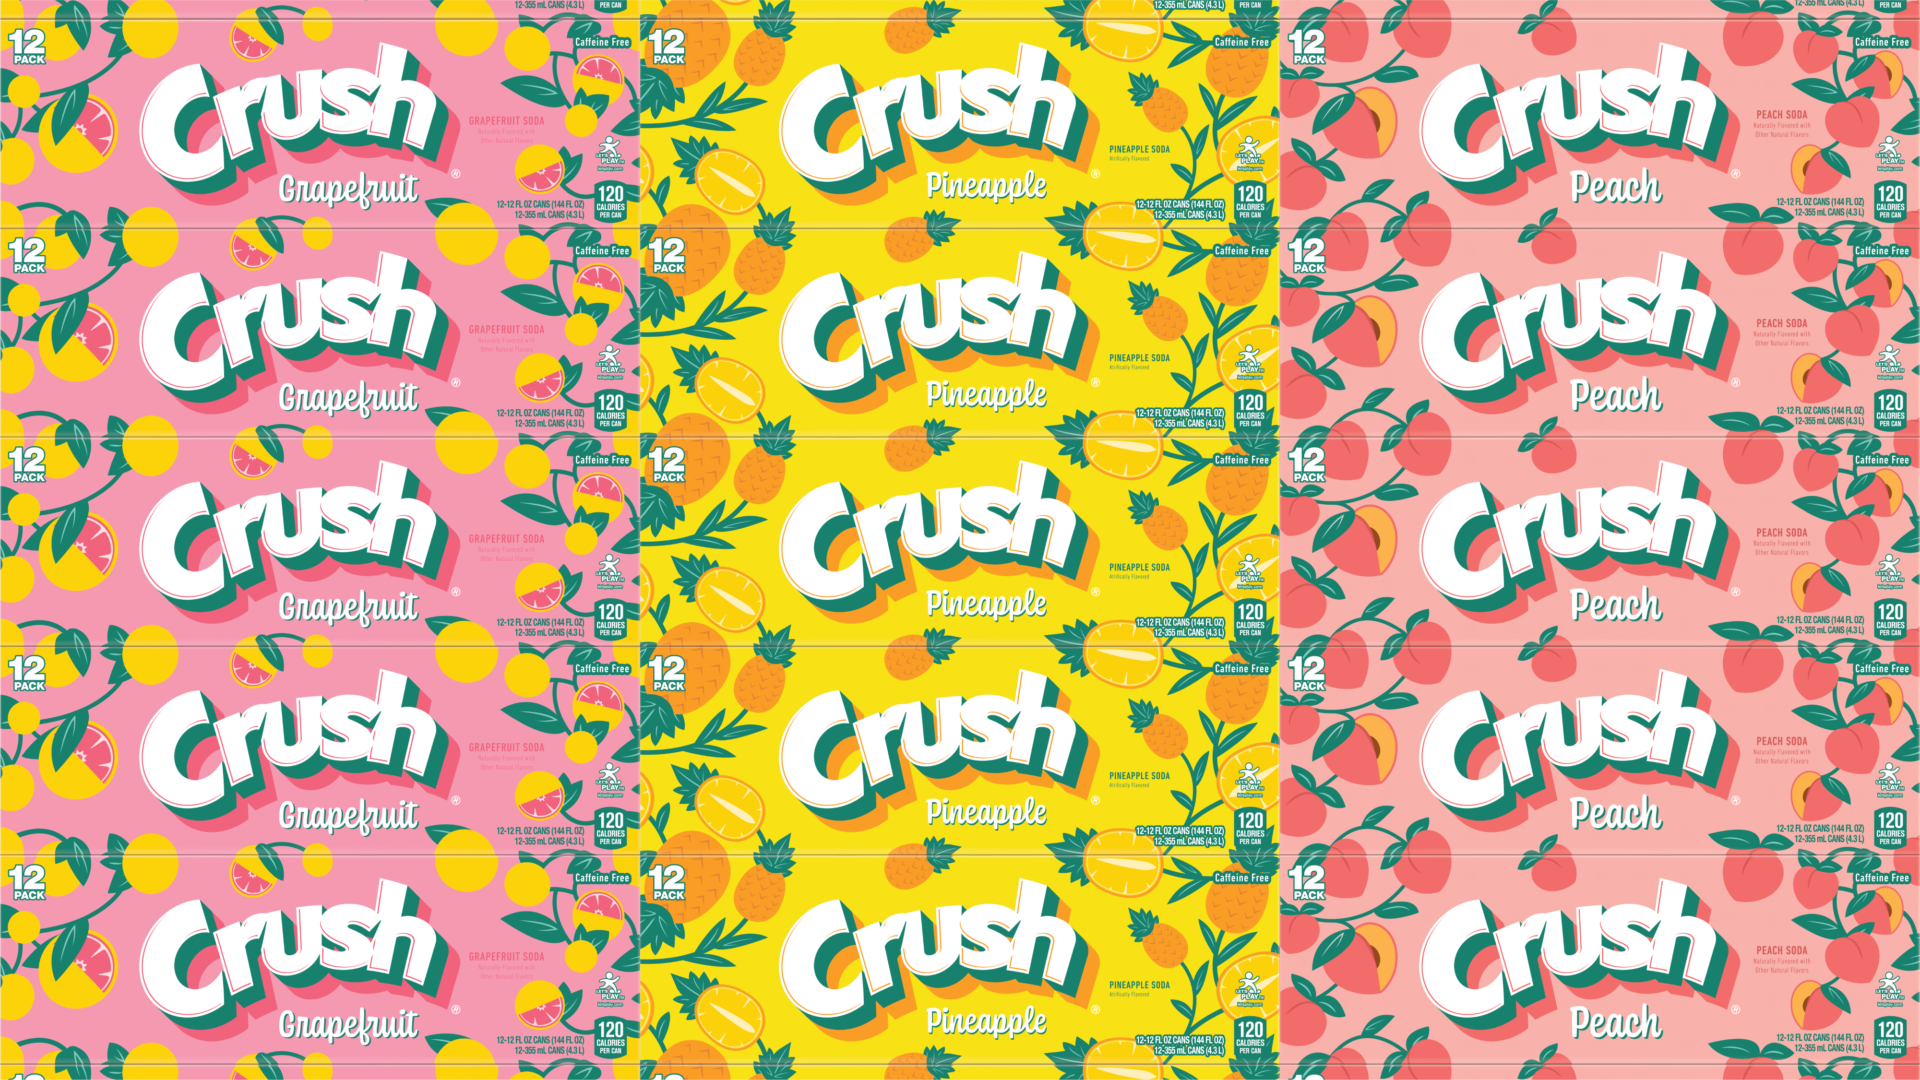 Crush_Context_LineUp-34-1